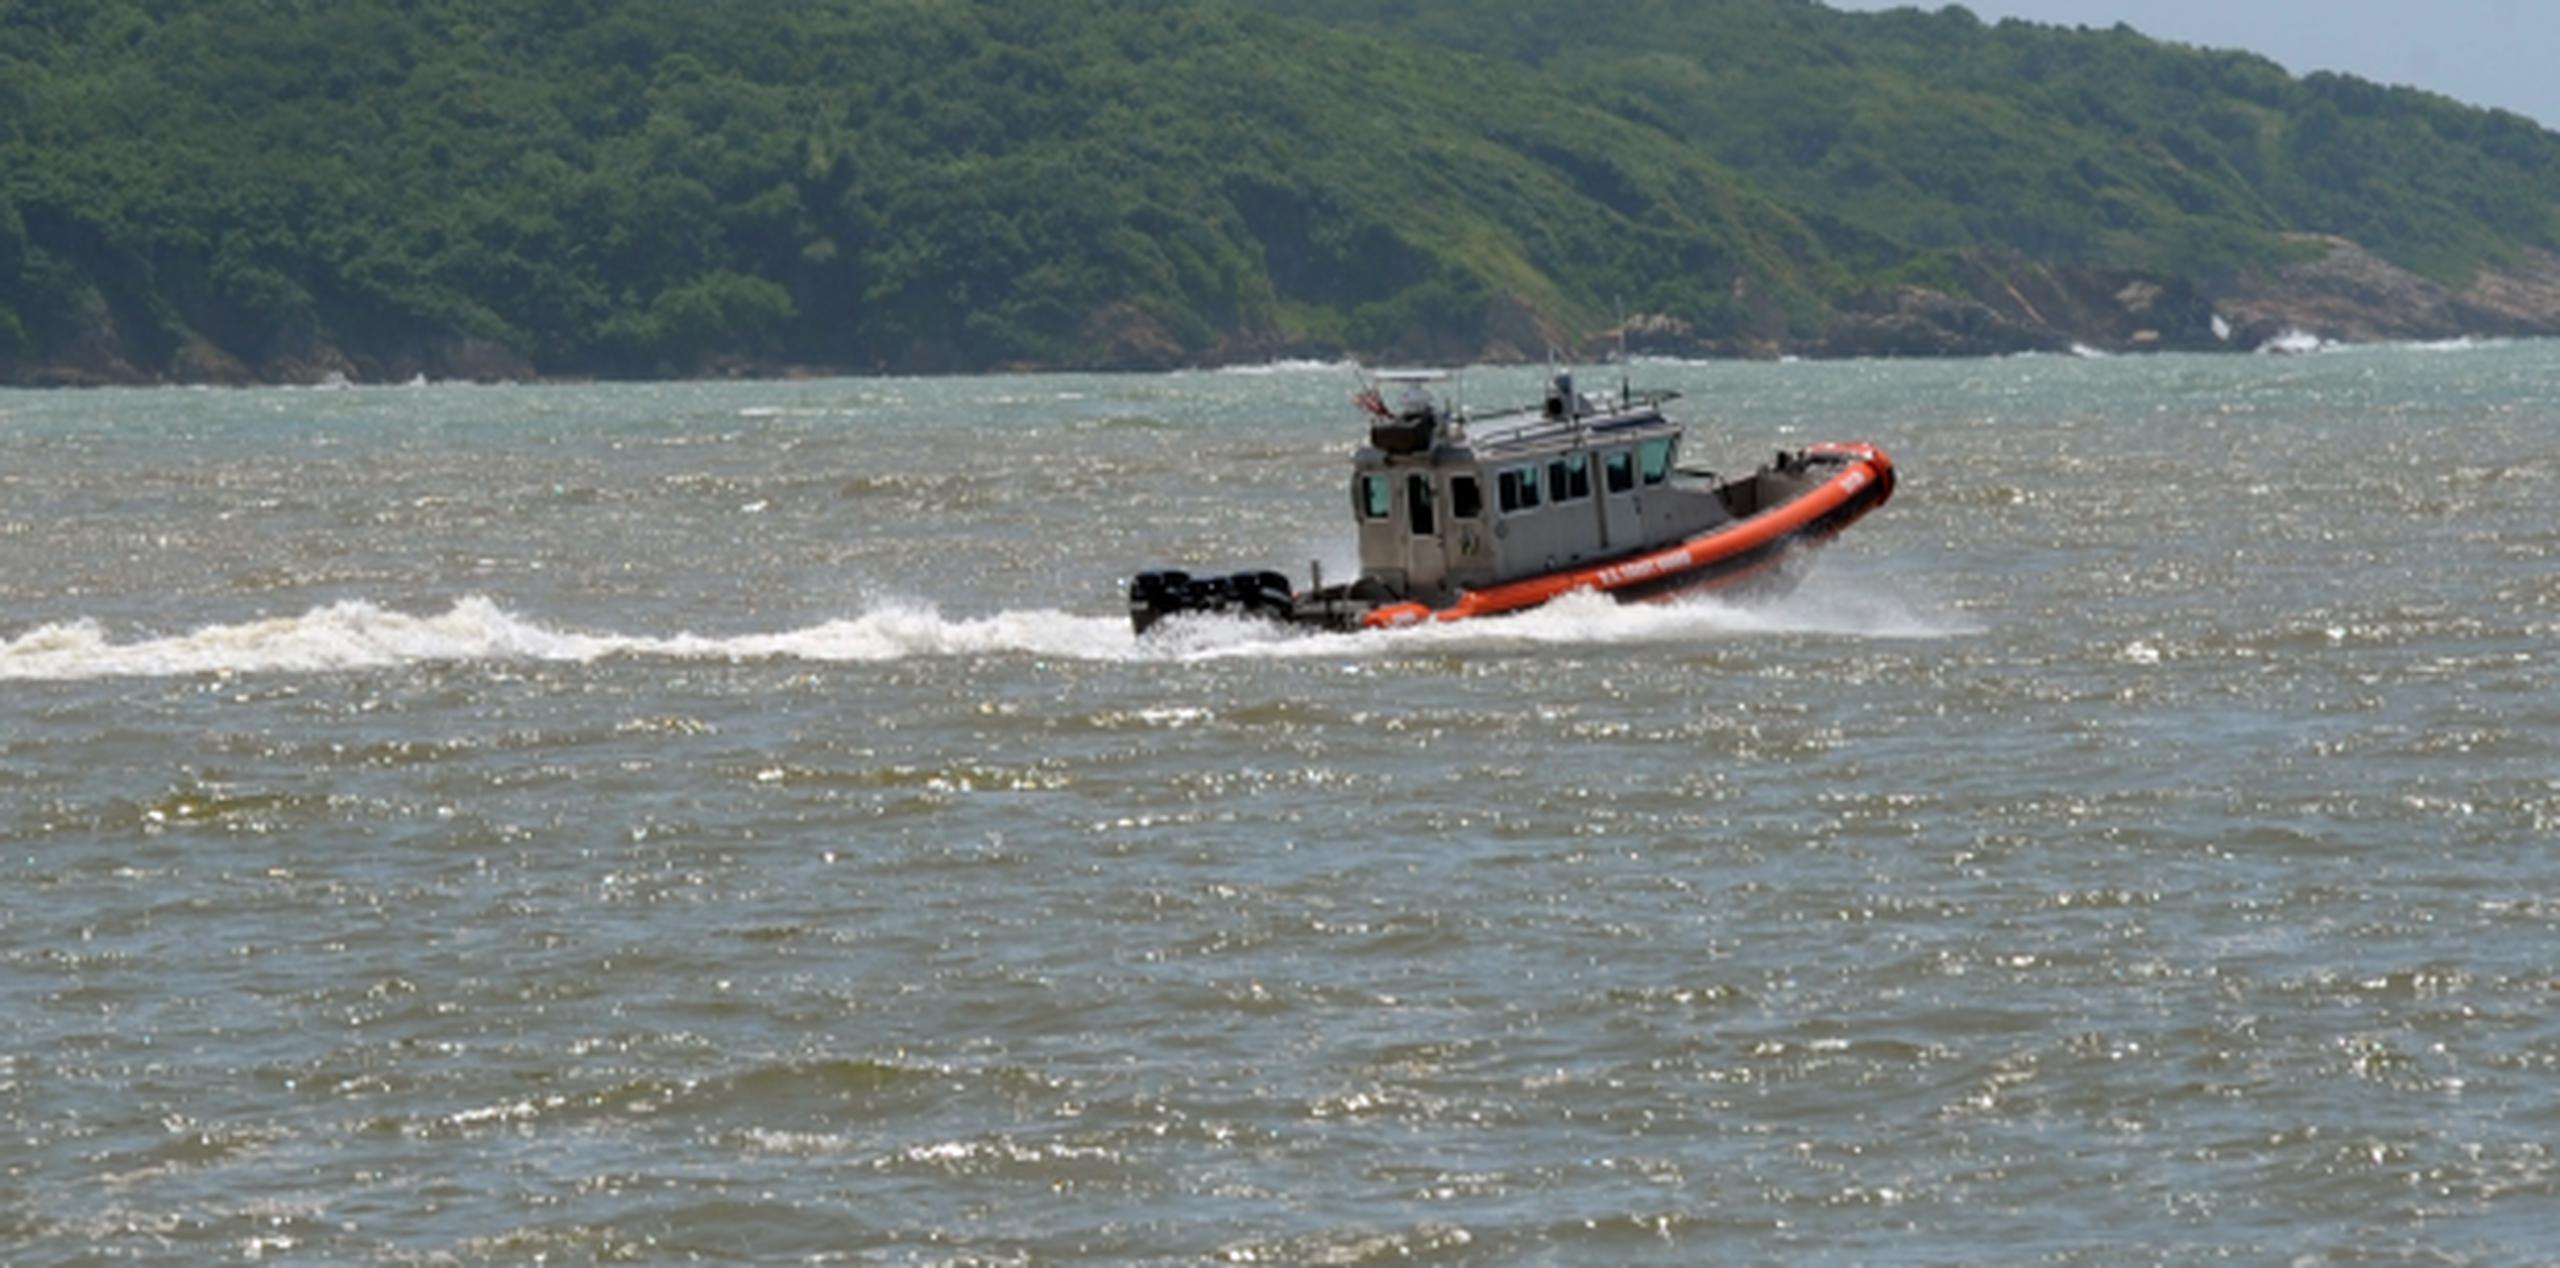 El equipo de rescate del Coast Guard Cutter Cushing -una embarcación de patrullaje de 110 pies de largo- detectó el bote donde iban las personas. (Archivo)